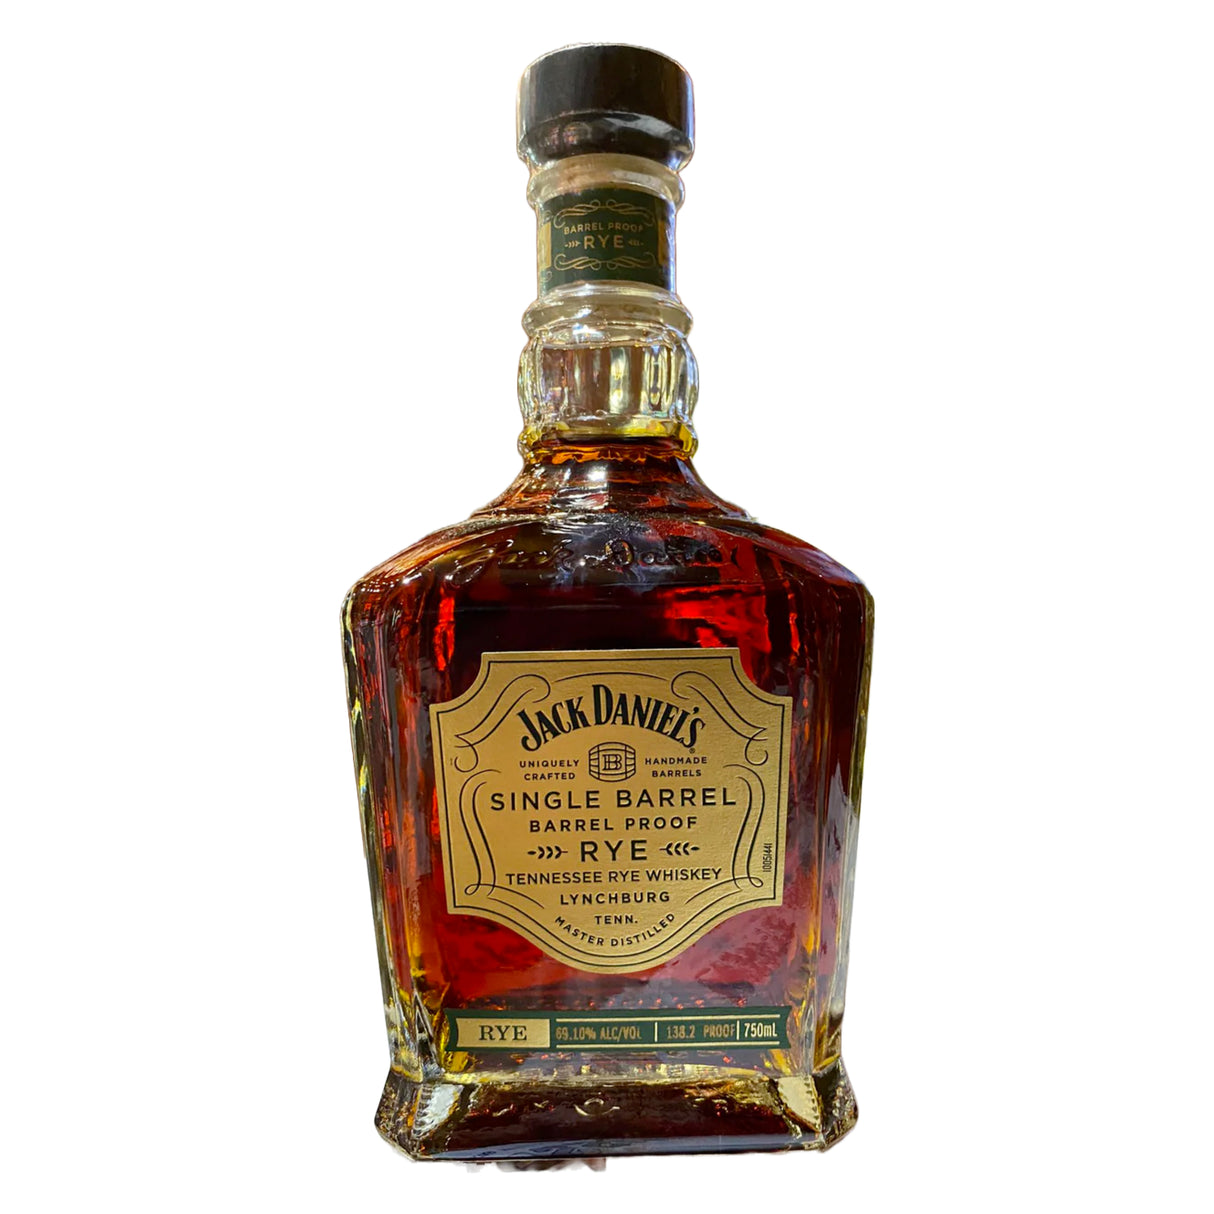 Jack Daniel's Single Barrel Special Release Barrel Proof Tennessee Rye Whiskey - De Wine Spot | DWS - Drams/Whiskey, Wines, Sake